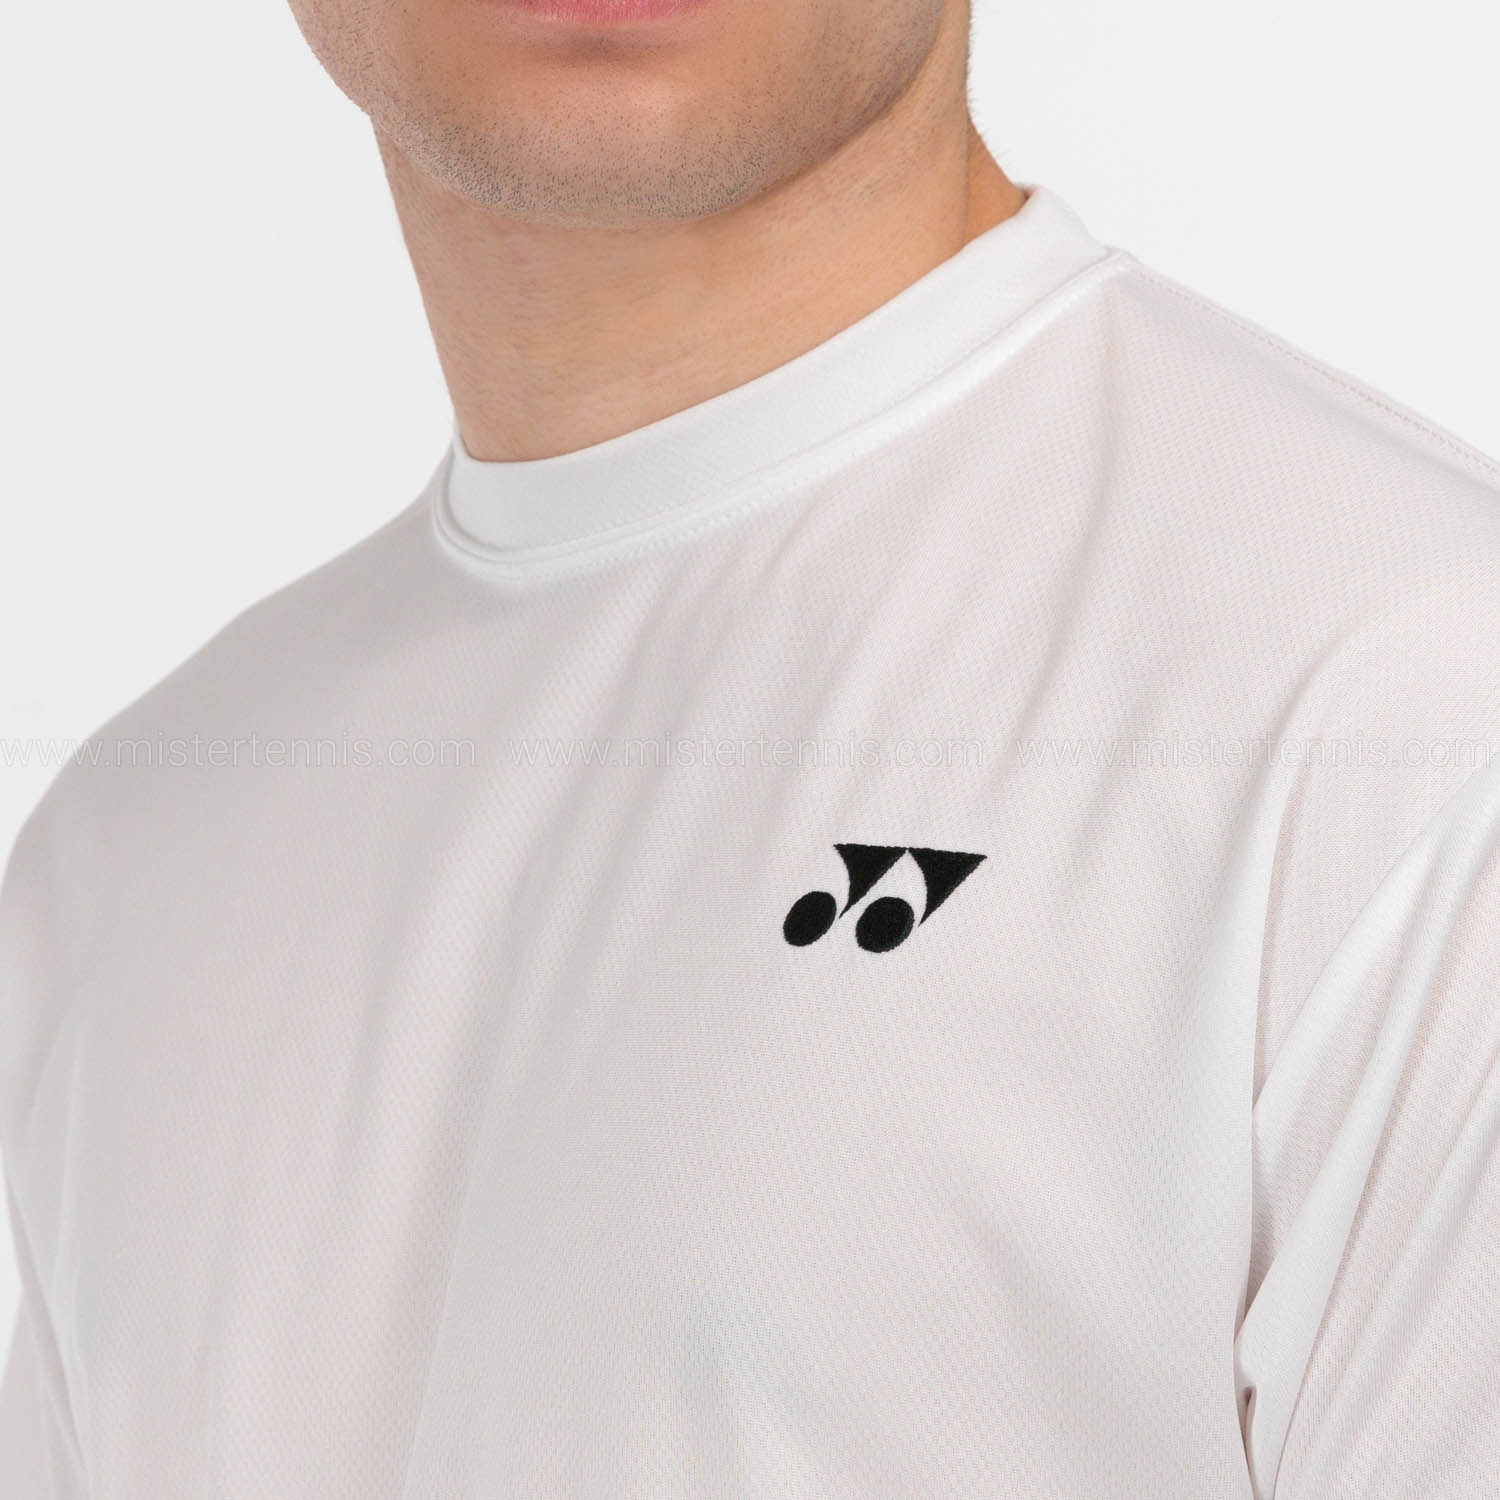 Yonex Club Mens Tennis T-Shirt